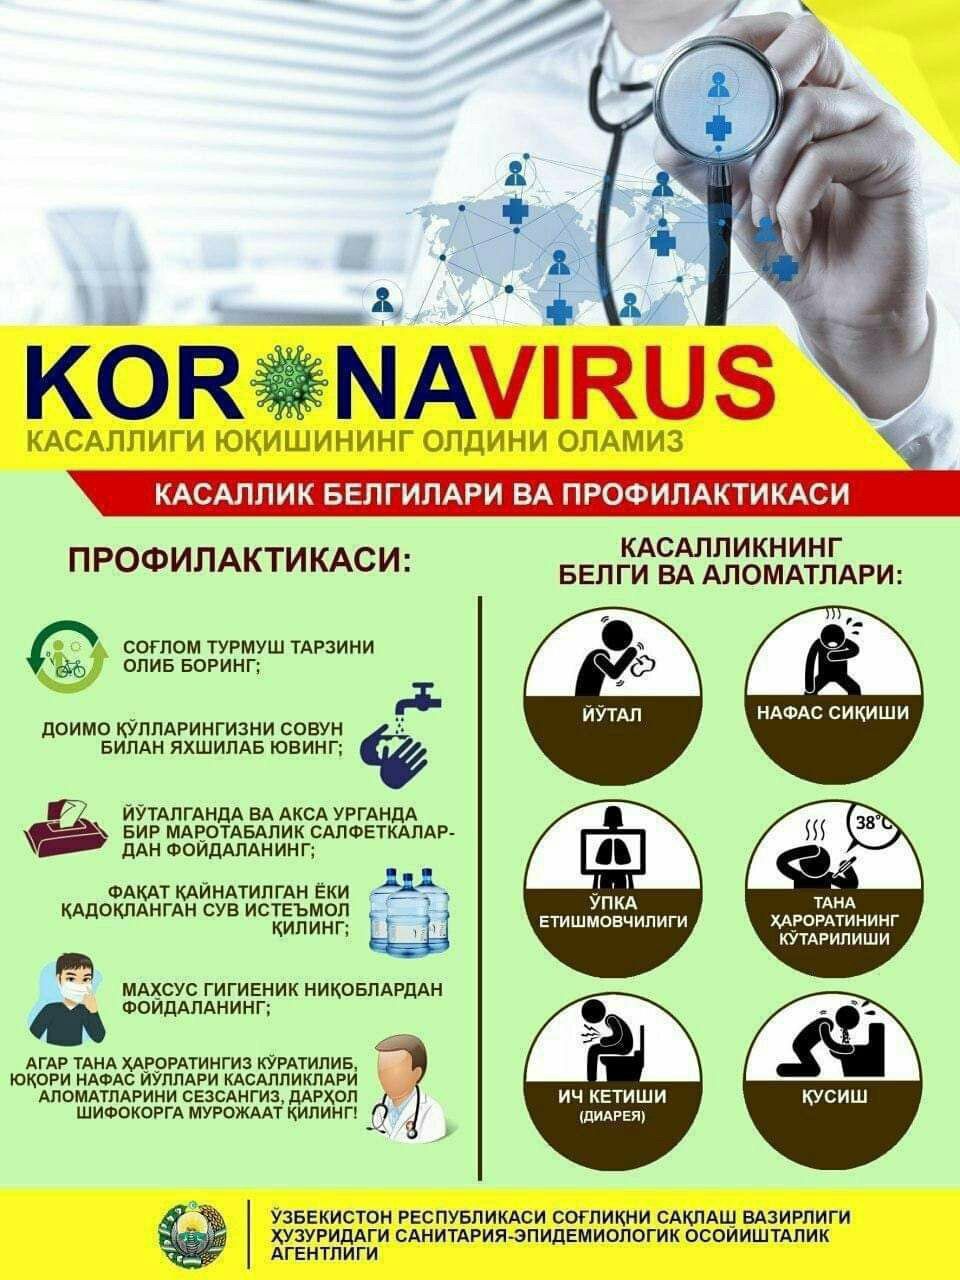 Koronavirus - Коронавирусы - Koronavirus haqida - Коронавирусы хакида